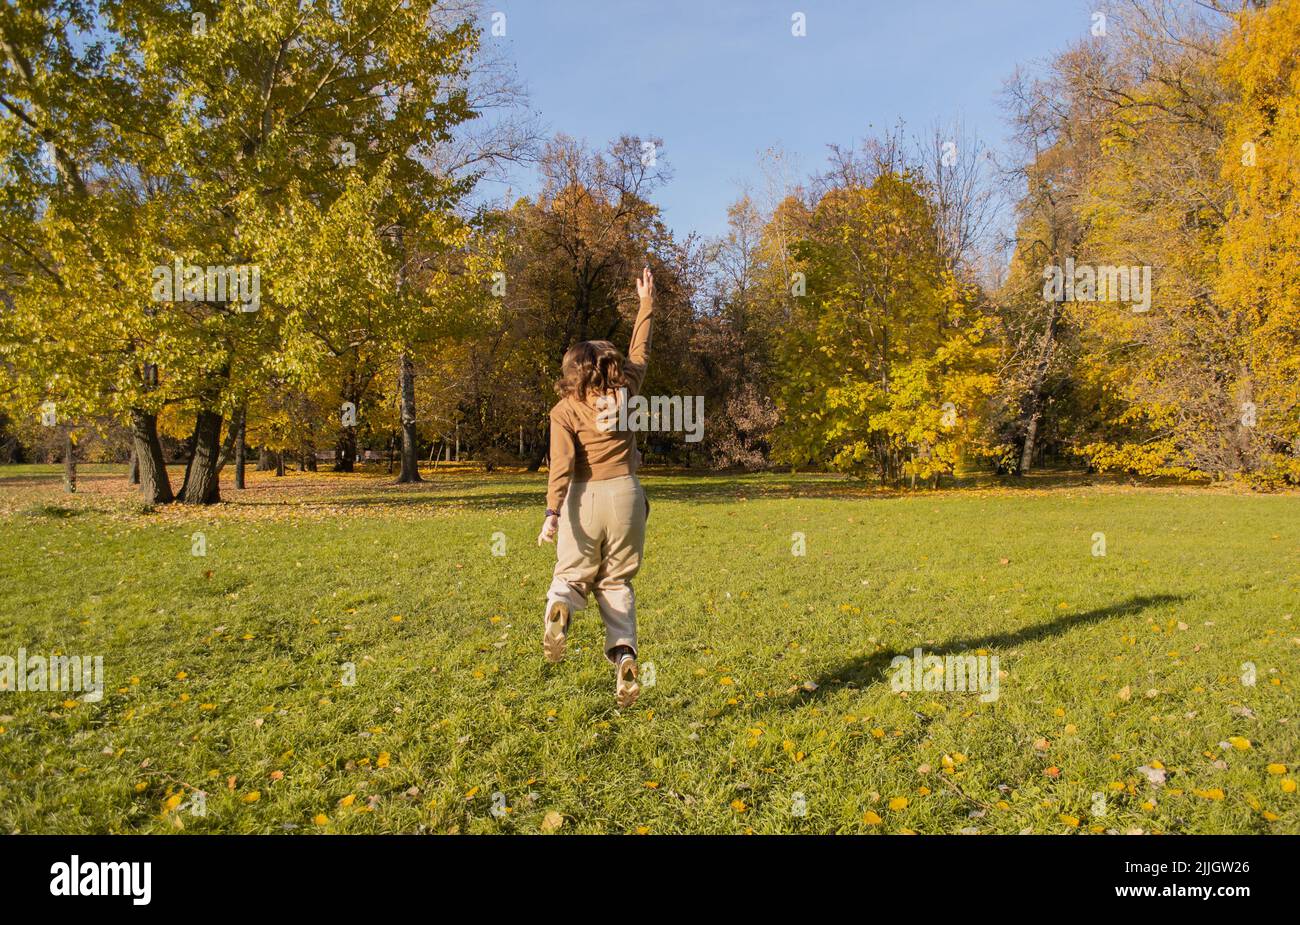 Une jeune femme dans un parc d'automne jouit de la liberté. Elle saute avec les bras vers le haut comme le super-héros Wonder Woman. Banque D'Images